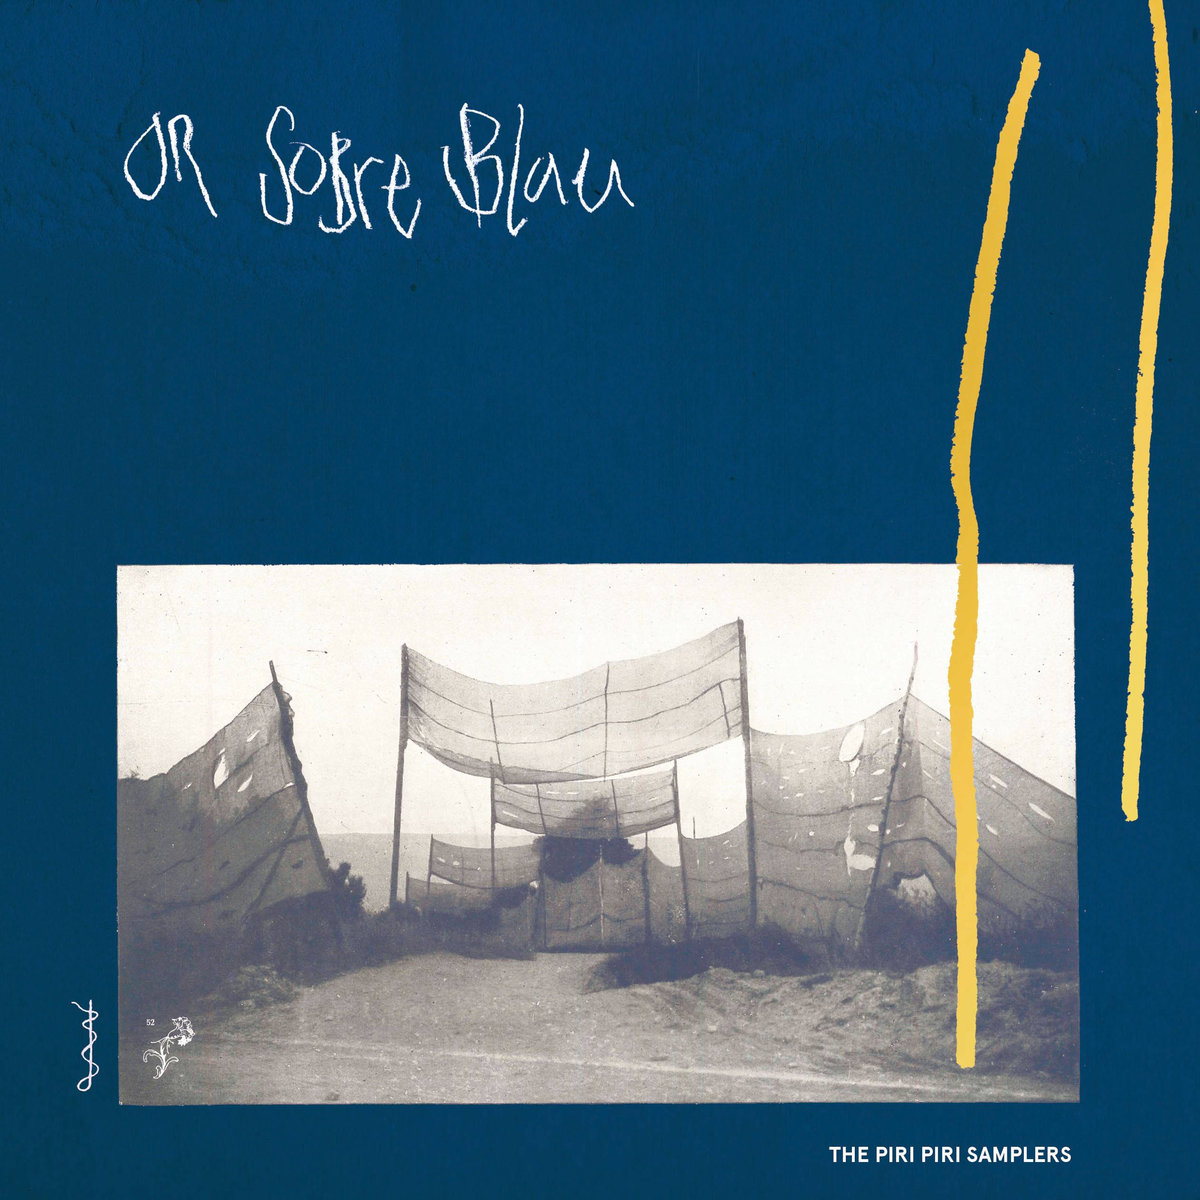 or sobre blau piri piri samplers album cover